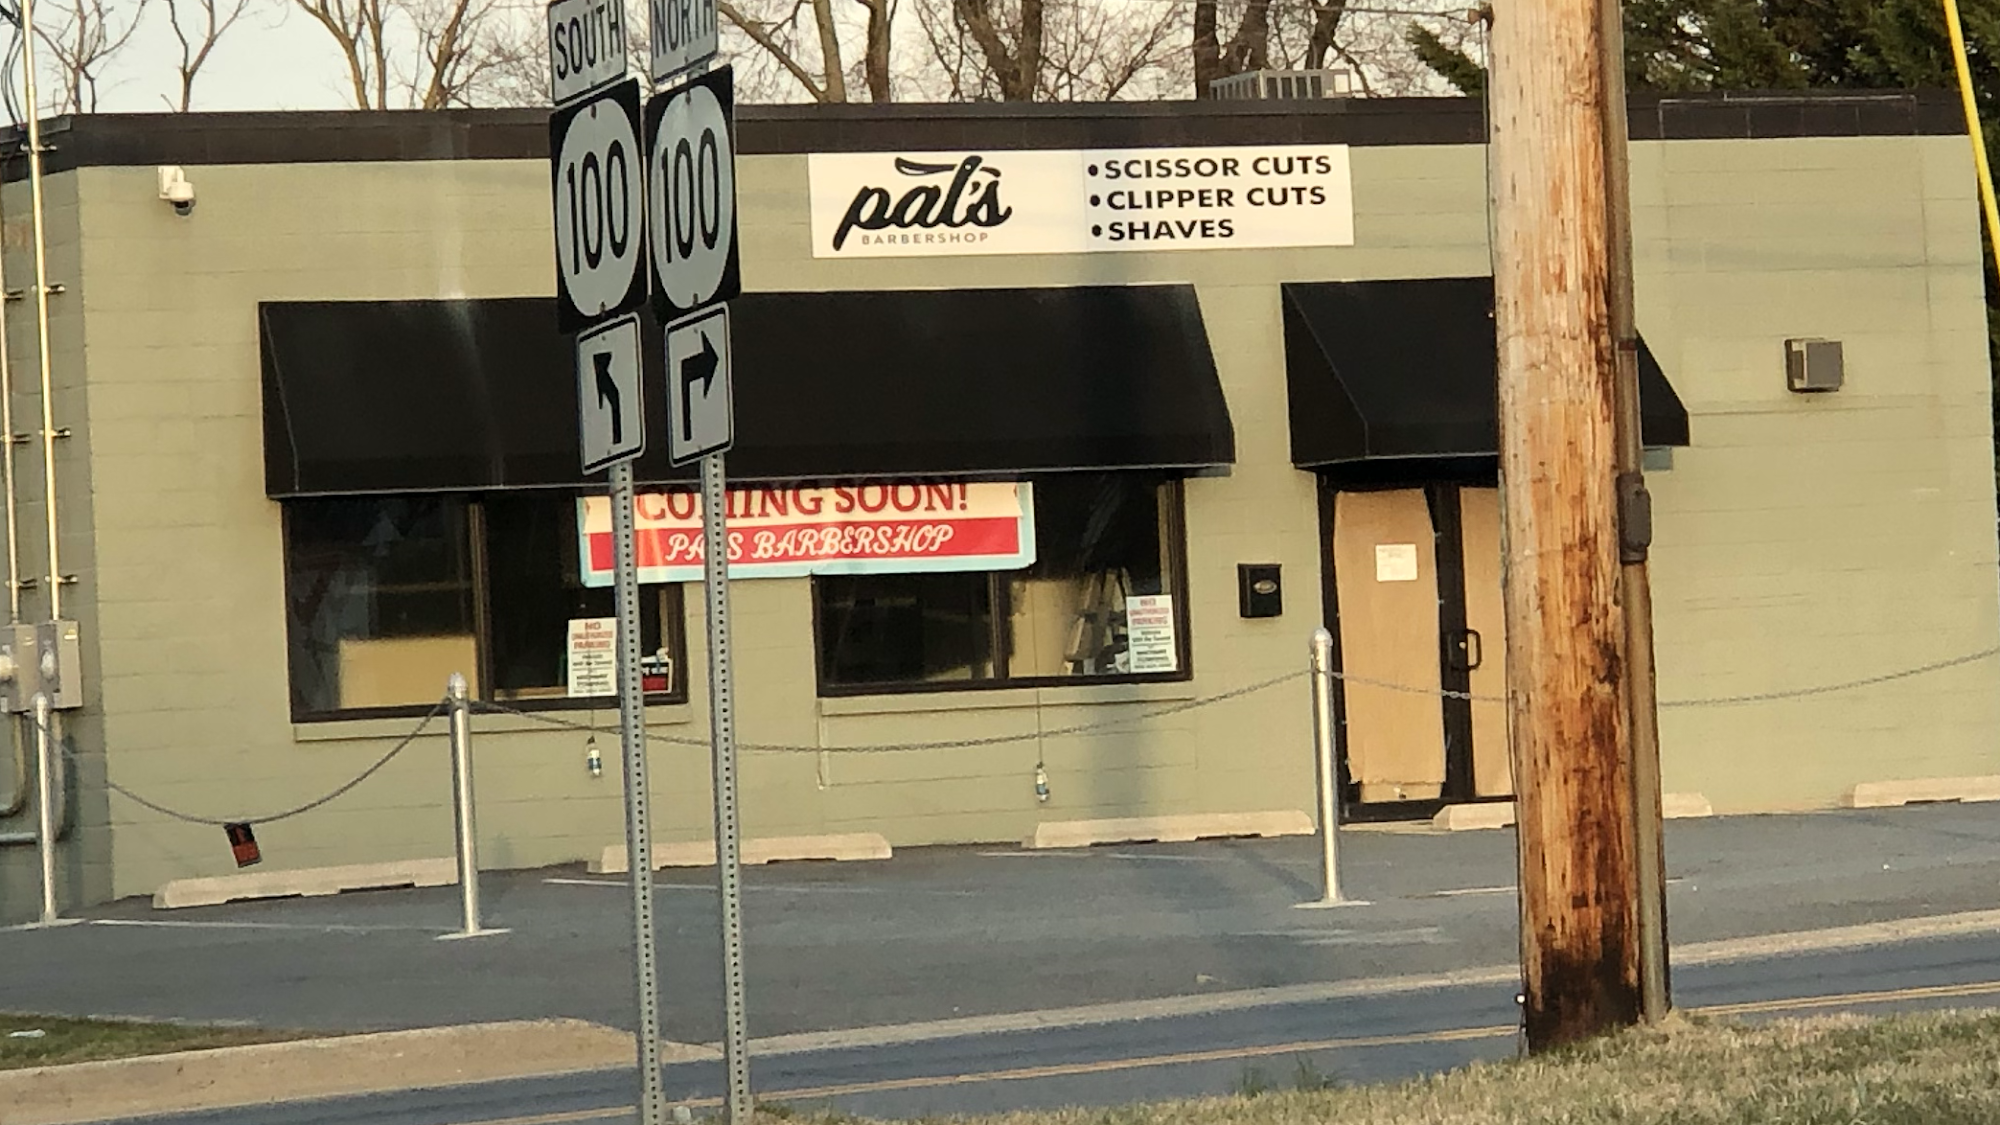 Pat’s Barbershop